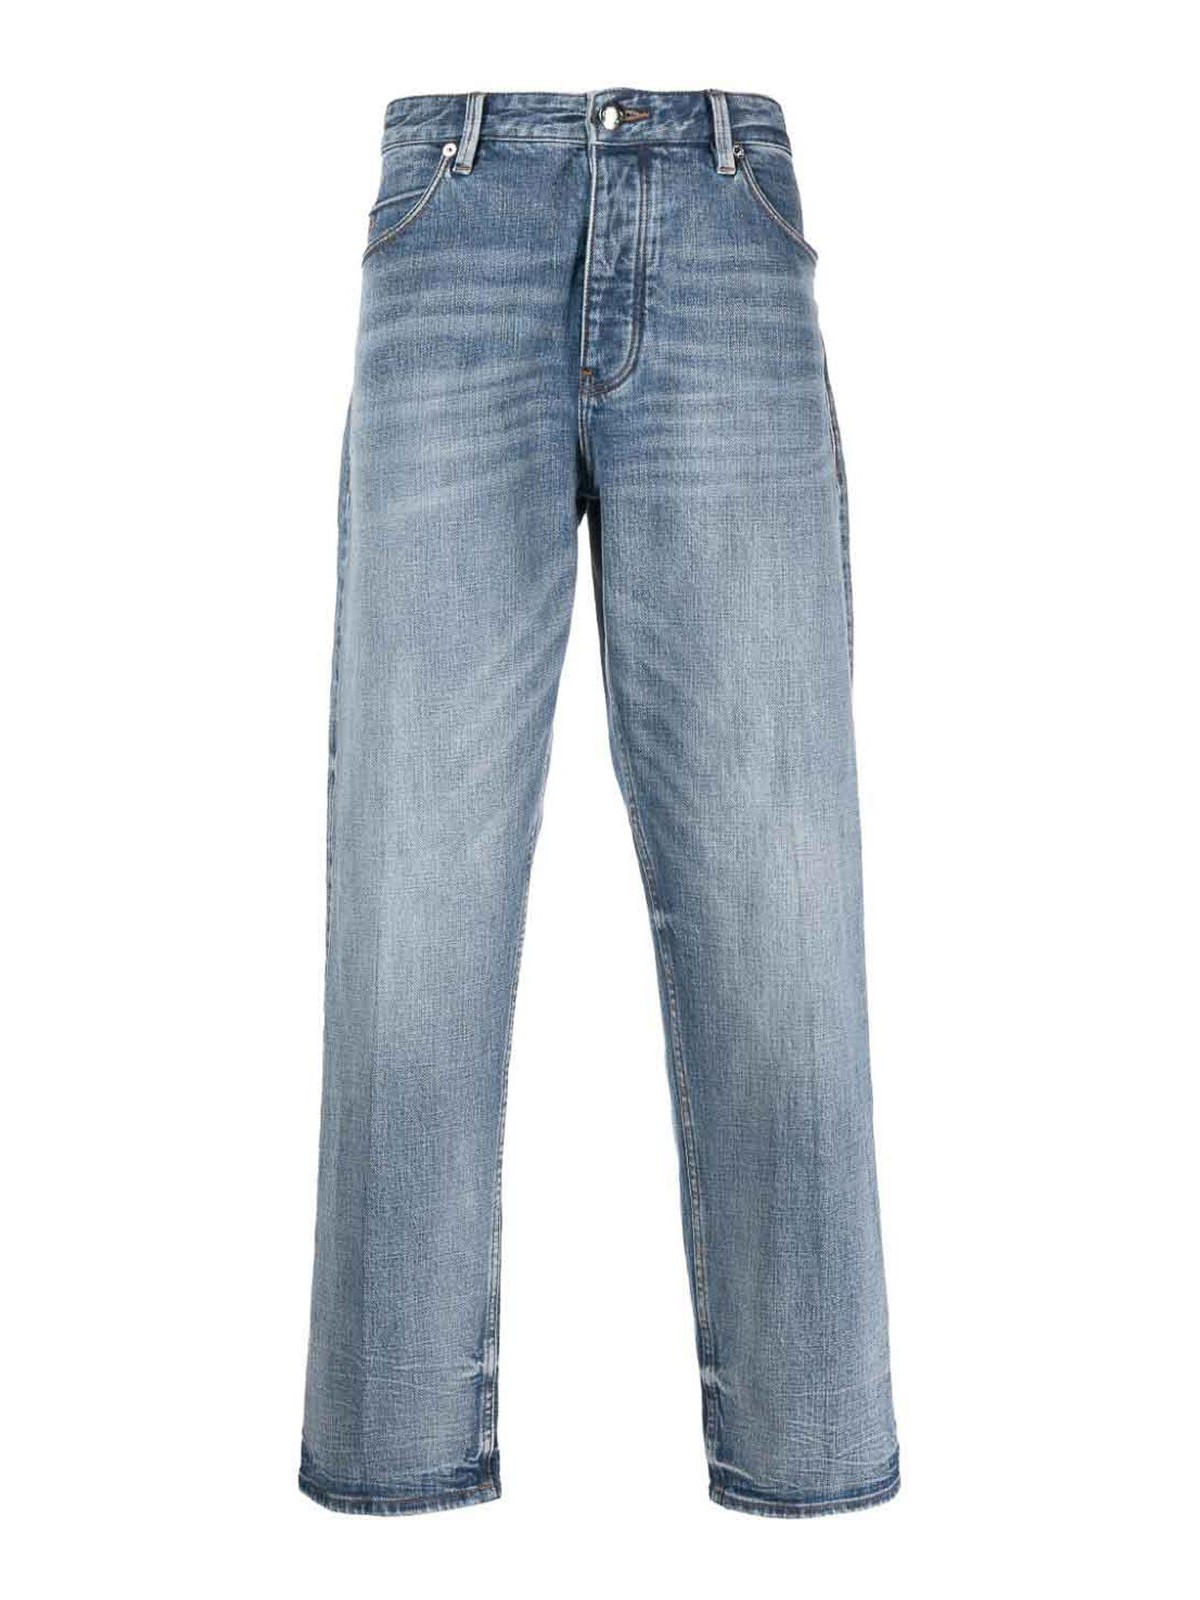 Bootcut jeans Emporio Armani - Denim cotton jeans - 6R1J691DQTZ0943